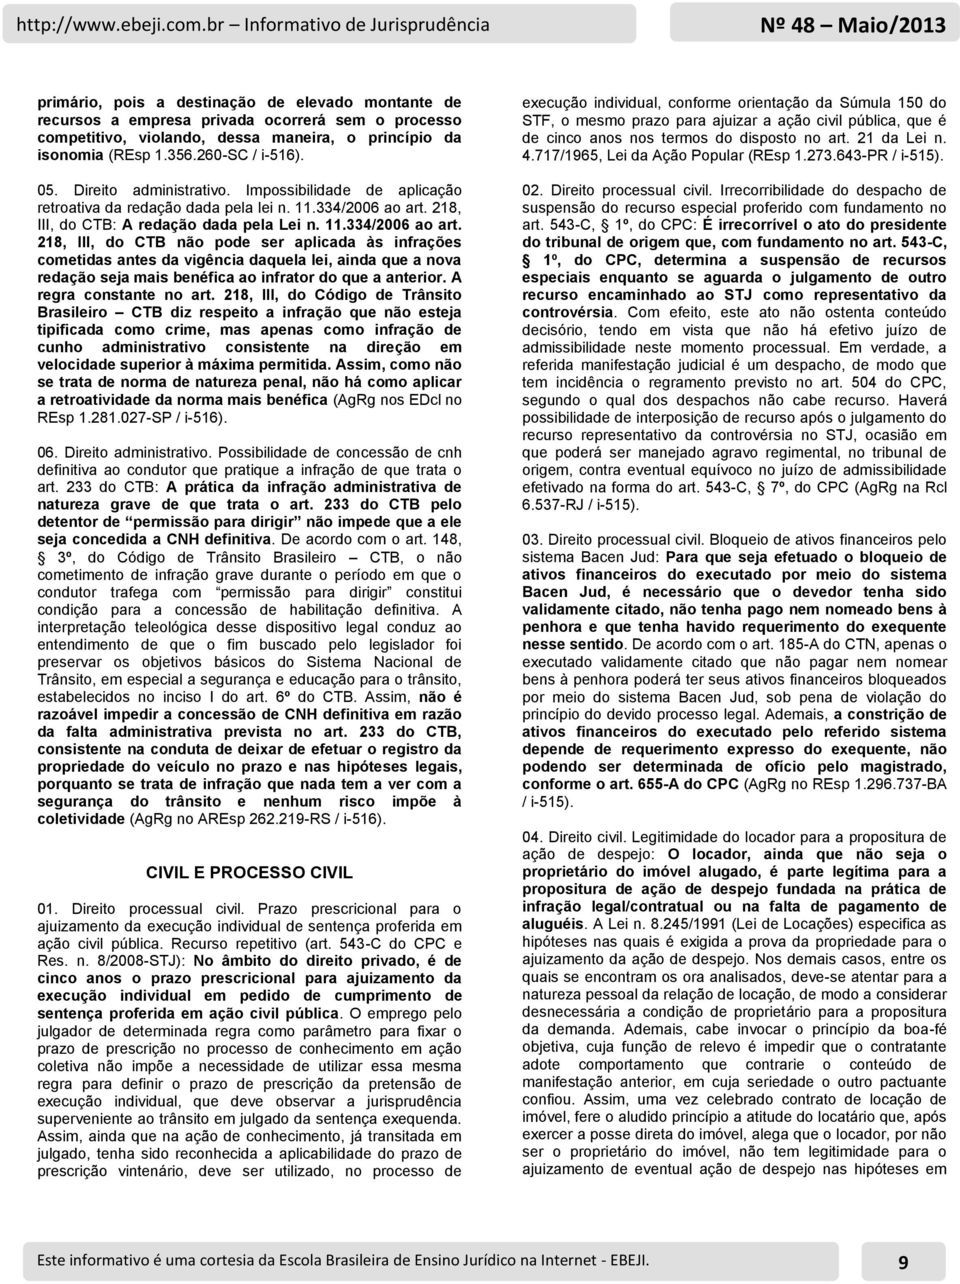 218, III, do CTB: A redação dada pela Lei n. 11.334/2006 ao art.